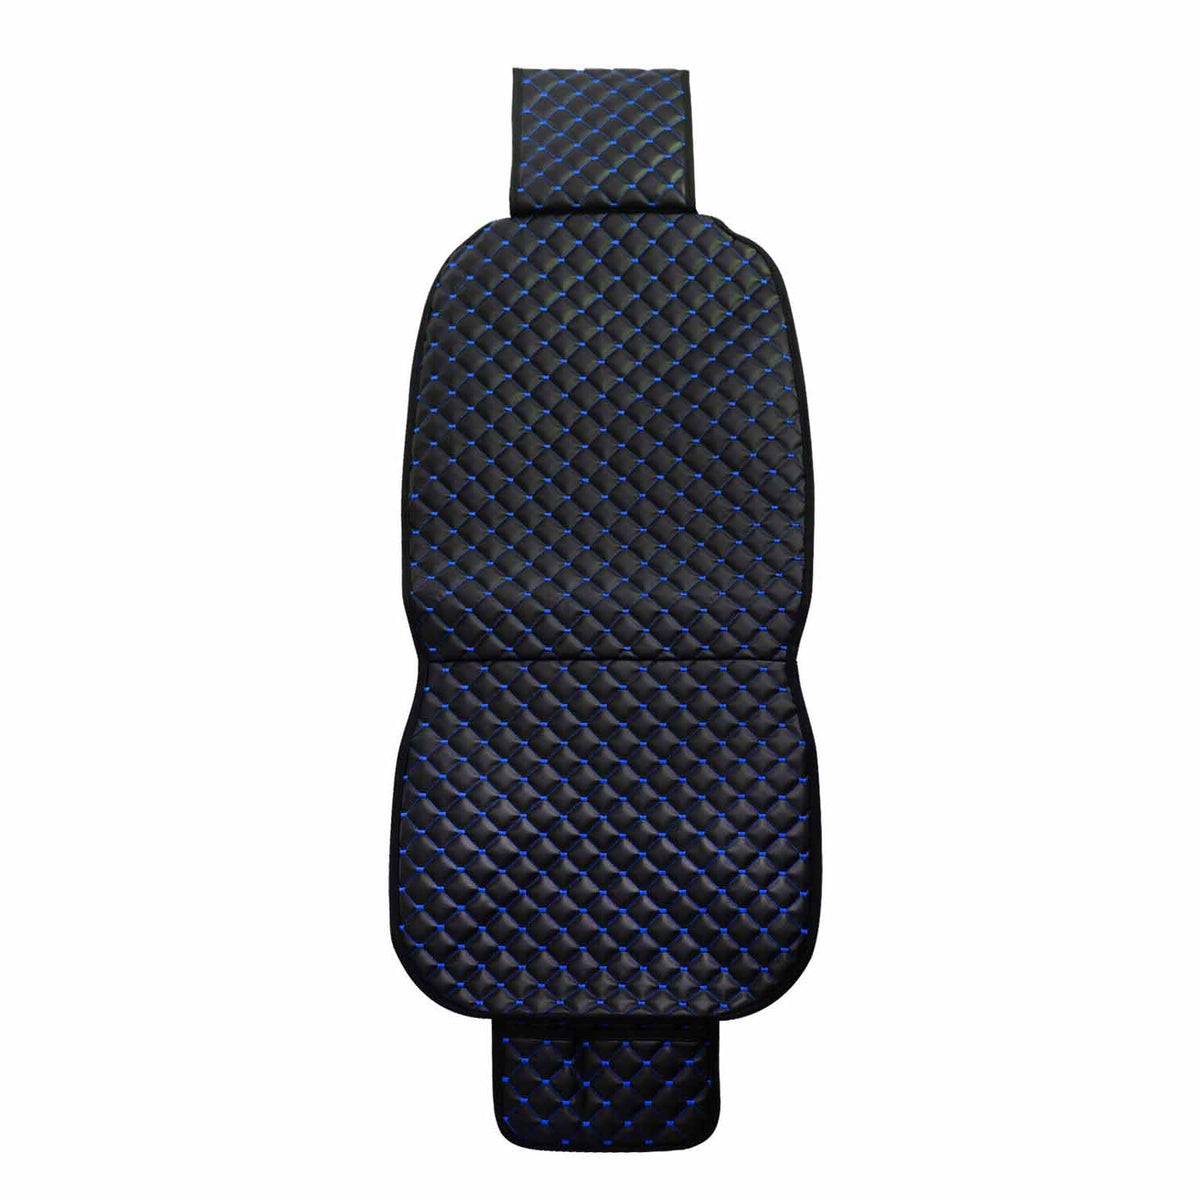 Auto Sitzbezüge Sitzauflage für Hyundai Santa Fe Sonata Schwarz Blau PU Leder 1x